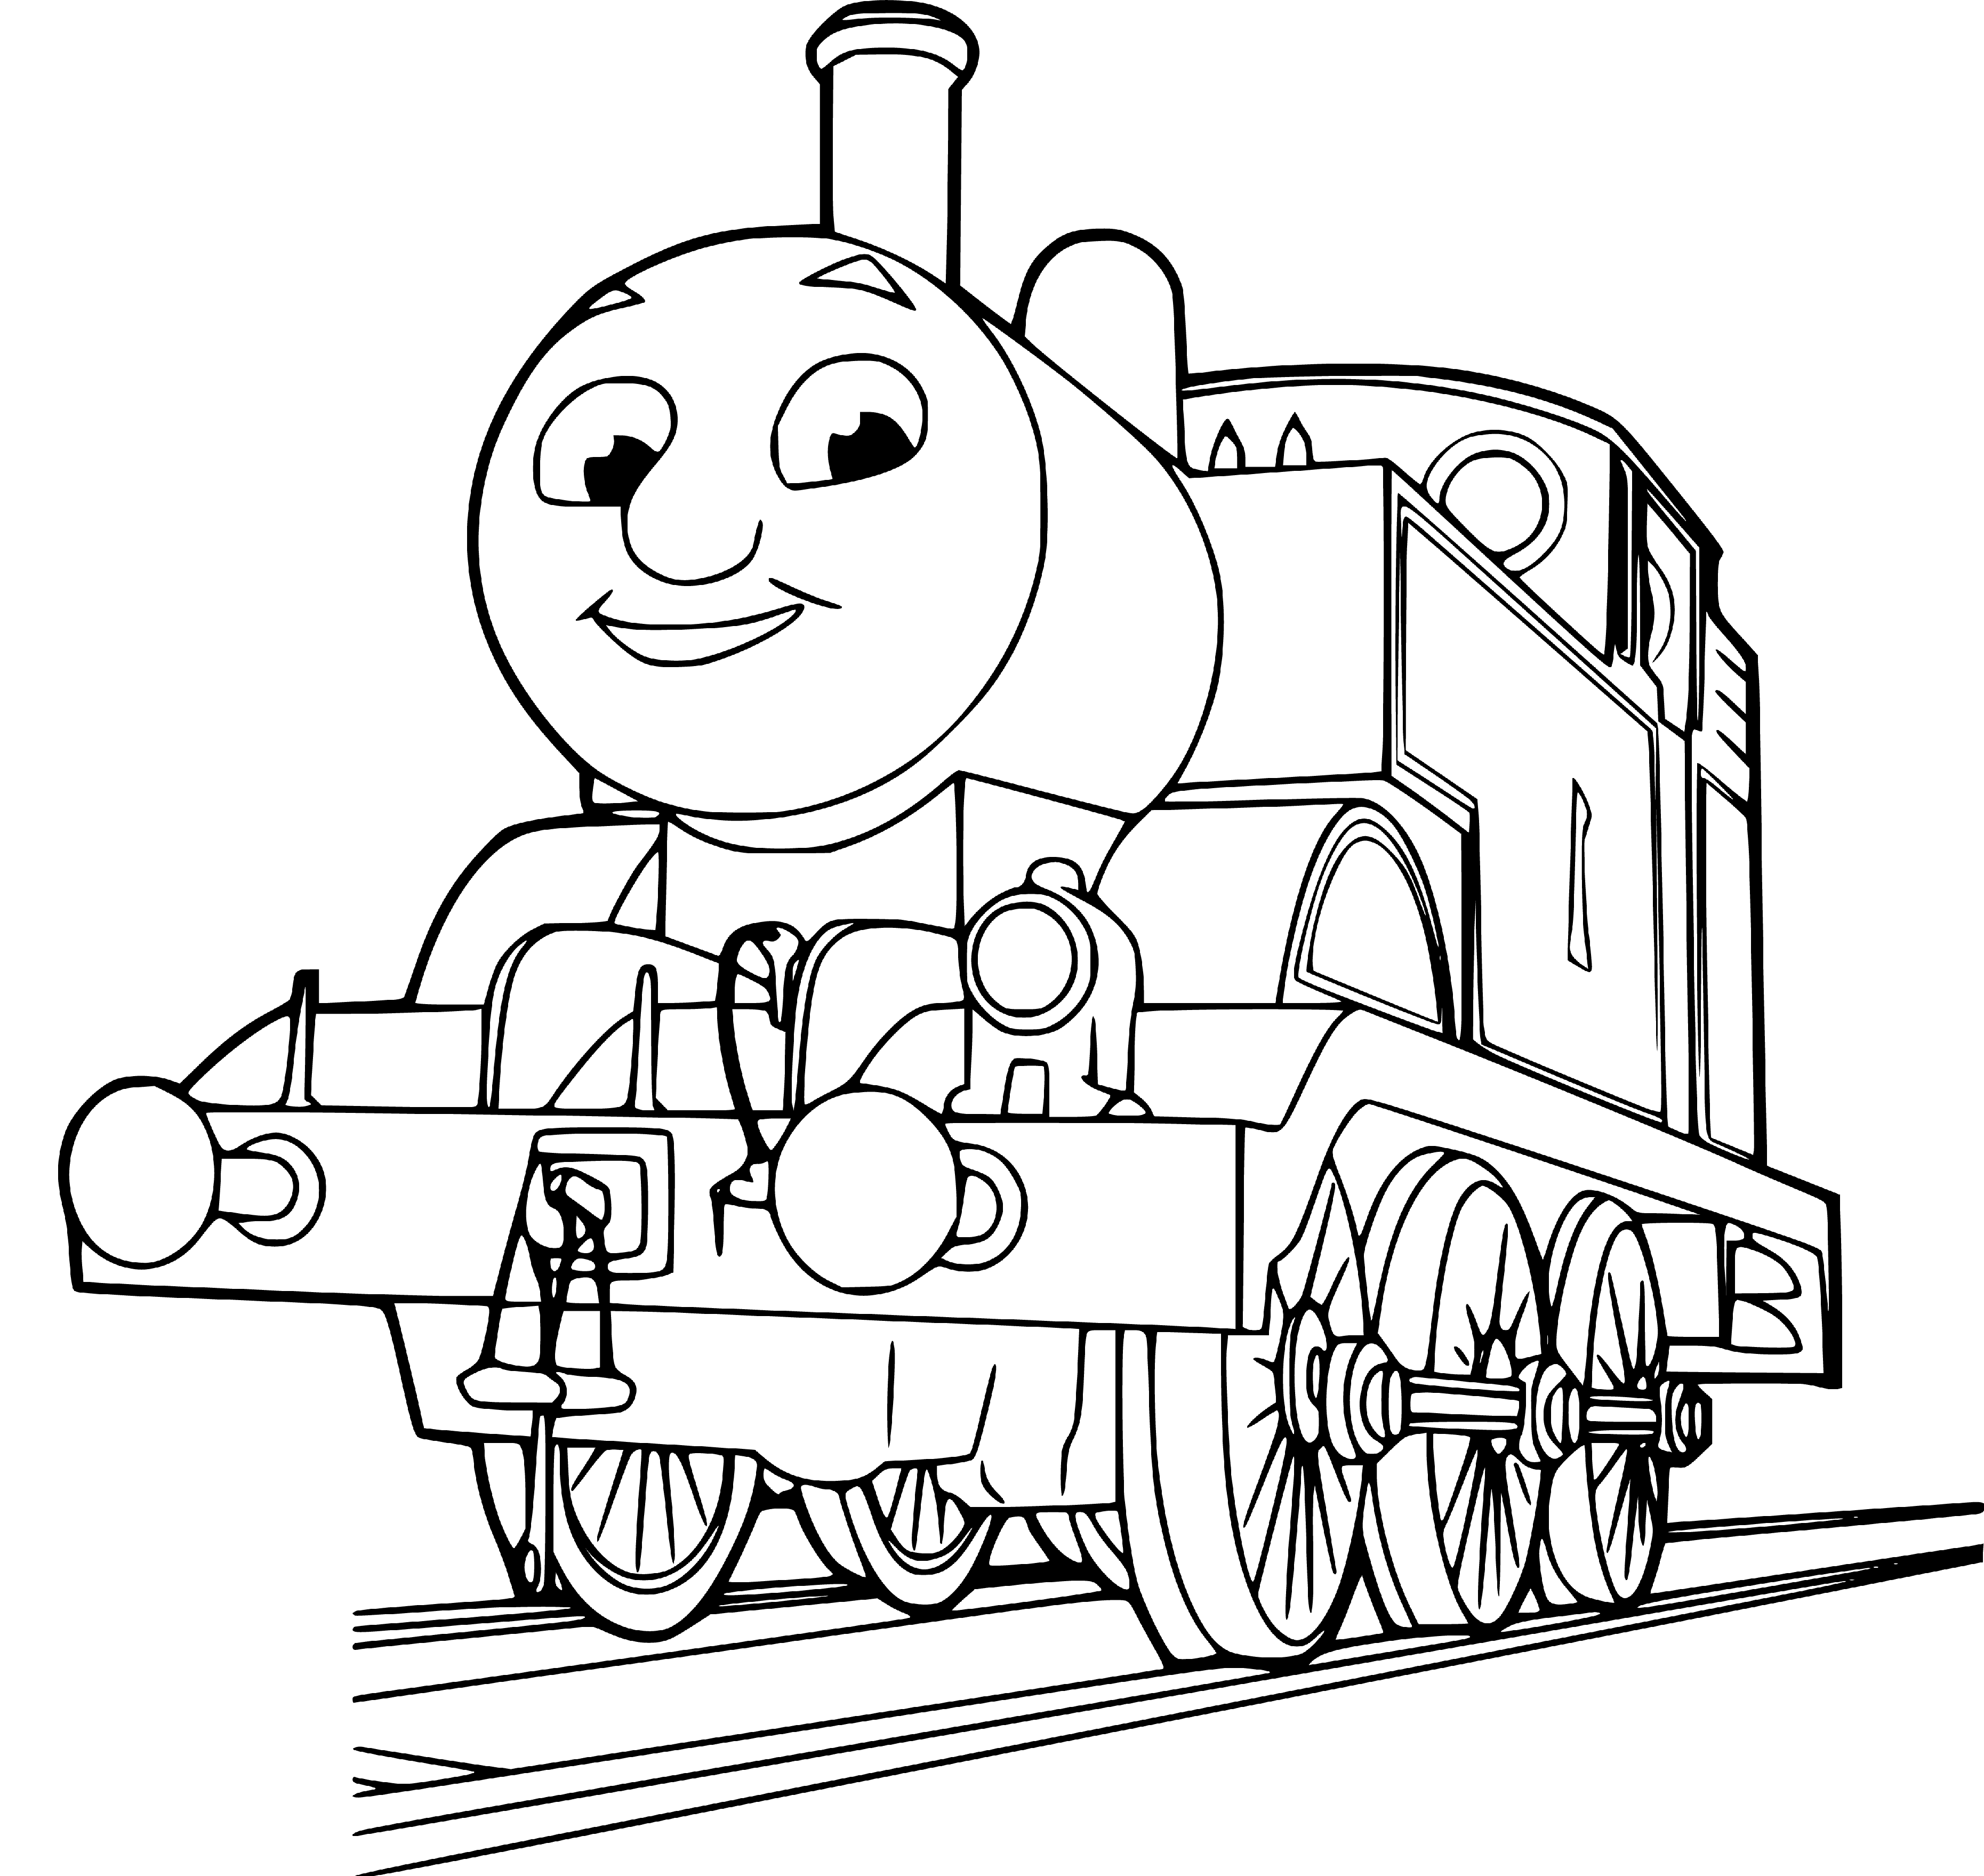 Easy Thomas the Train Coloring Sheets - SheetalColor.com